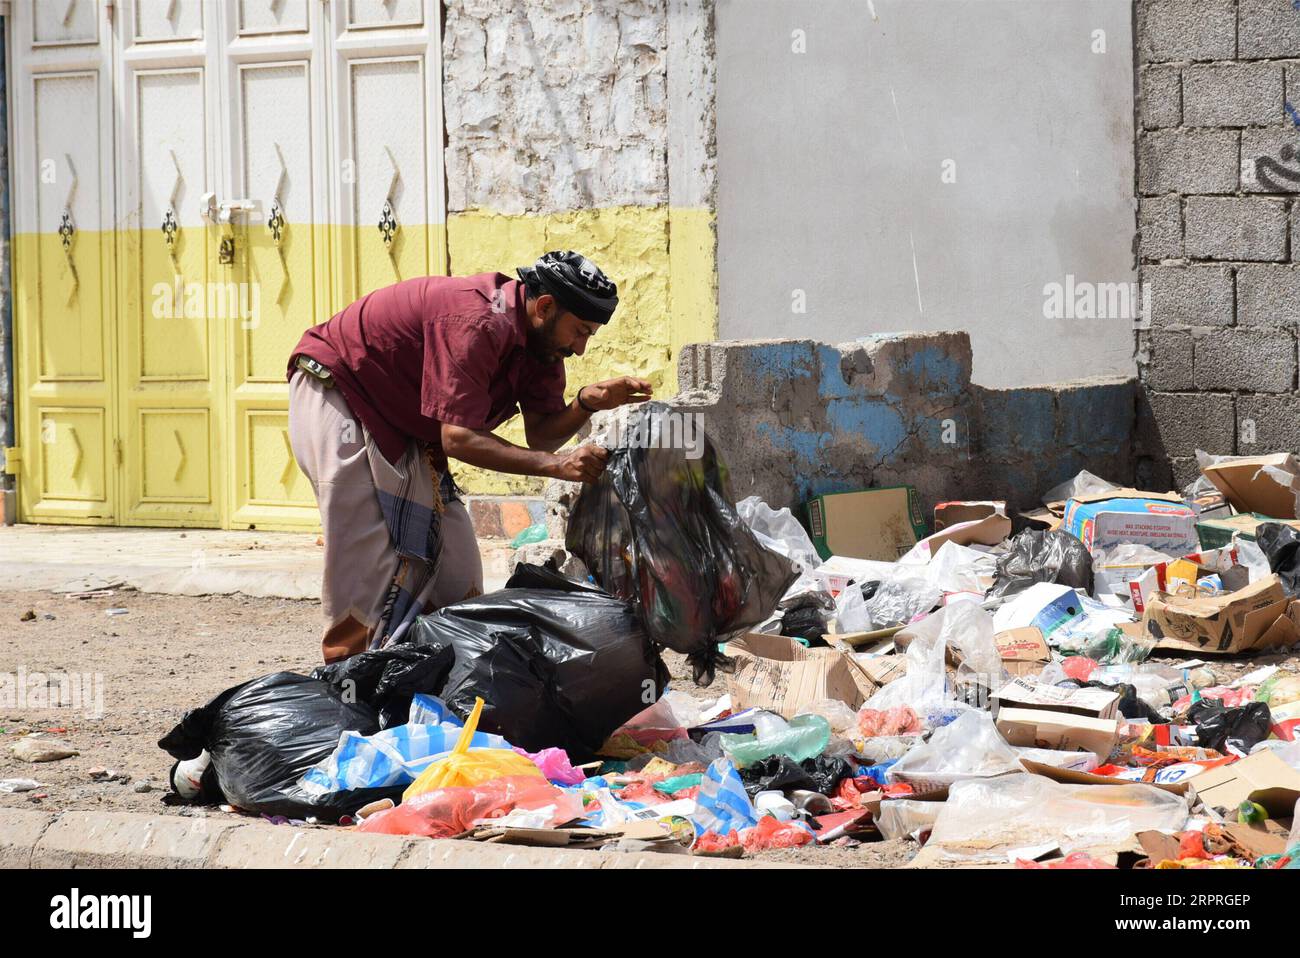 200403 -- JEMEN, 3. April 2020 Xinhua -- Ein Mann sucht nach recycelbaren Artikeln für den Verkauf auf einer Mülldeponie in der südlichen Hafenstadt Aden, Jemen, 2. April 2020. Obwohl im Jemen kein Fall von Coronaviren gemeldet wurde, hat die jemenitische Regierung strenge Maßnahmen ergriffen, einschließlich der Schließung von Unternehmen und Geschäften, um einem möglichen Ausbruch entgegenzuwirken. Einige arme Menschen vor Ort gaben jedoch an, dass sie es sich nicht leisten können, zu Hause zu bleiben, und sie sind verpflichtet, weiterhin an einen Arbeitsplatz zu gehen, um ihren Lebensunterhalt zu verdienen und ihre Familien zu ernähren. UM MIT Feature: Anti-Coronavirus-Bemühungen sorgen sich um die Existenzgrundlage i Stockfoto